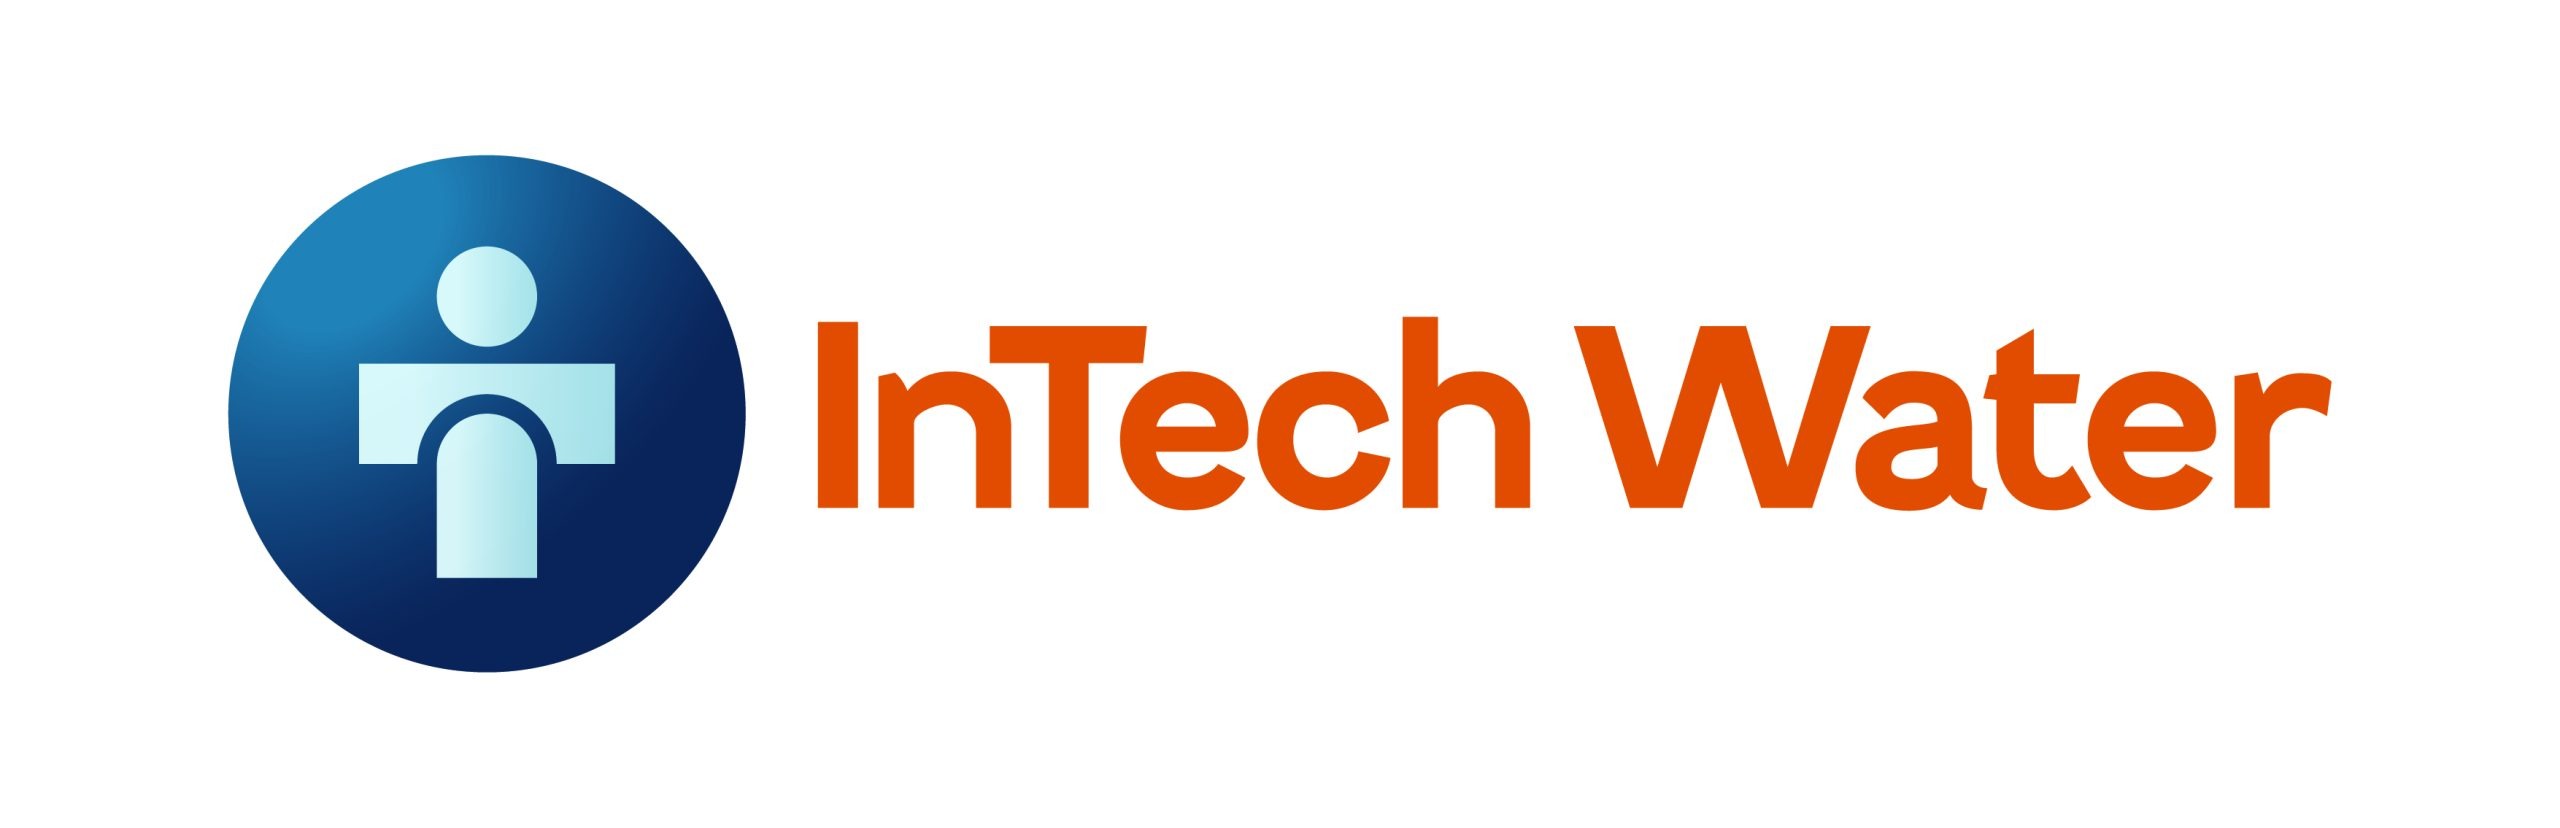 InTech Water logo